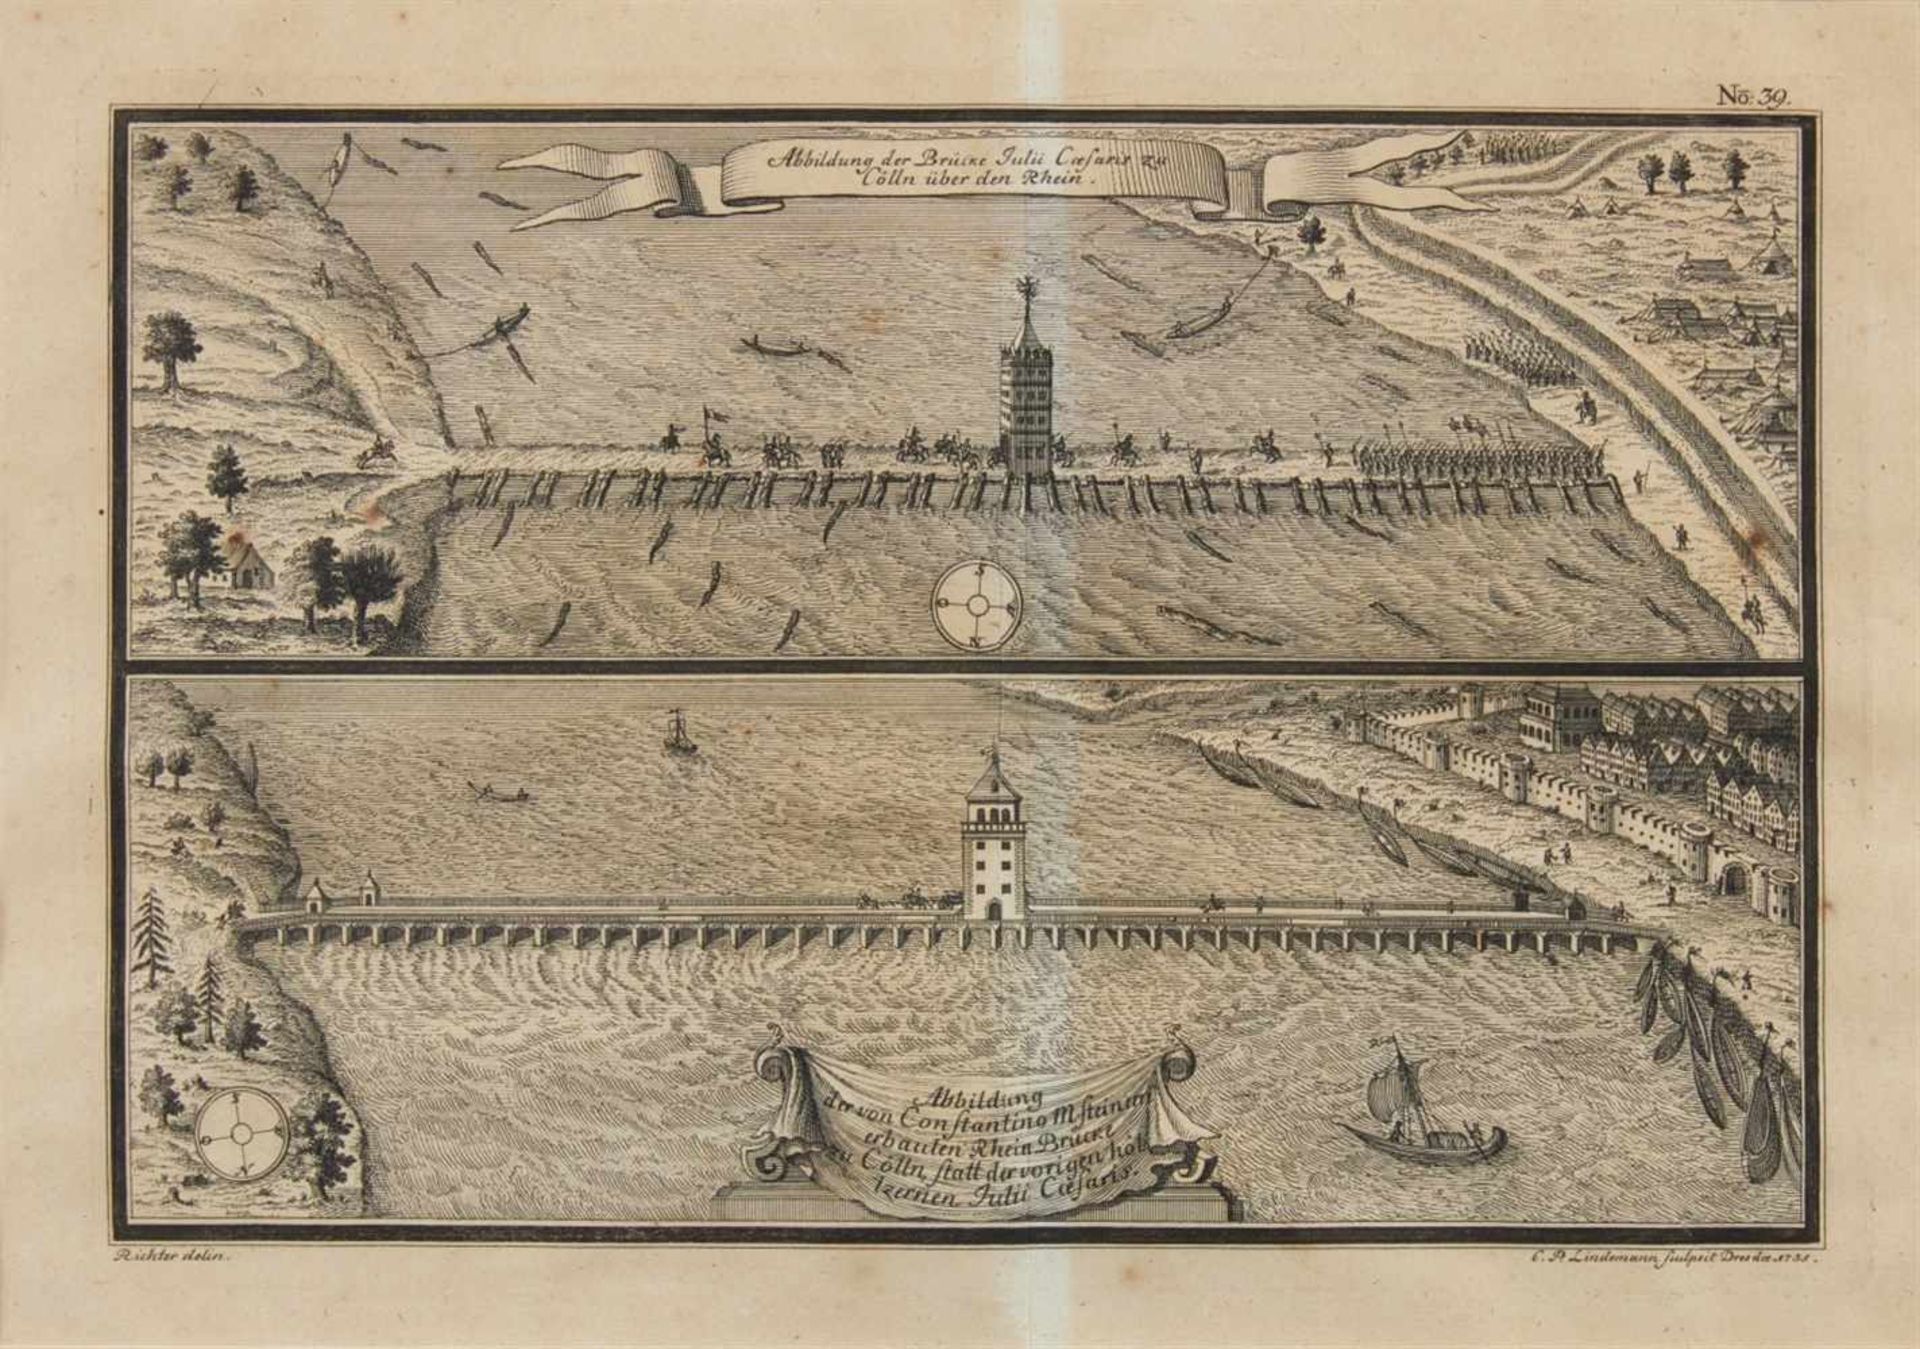 Köln. - Abbildung der Brücke Julii Caesaris zu Cölln über den Rhein. Abbildung der von - Image 2 of 2